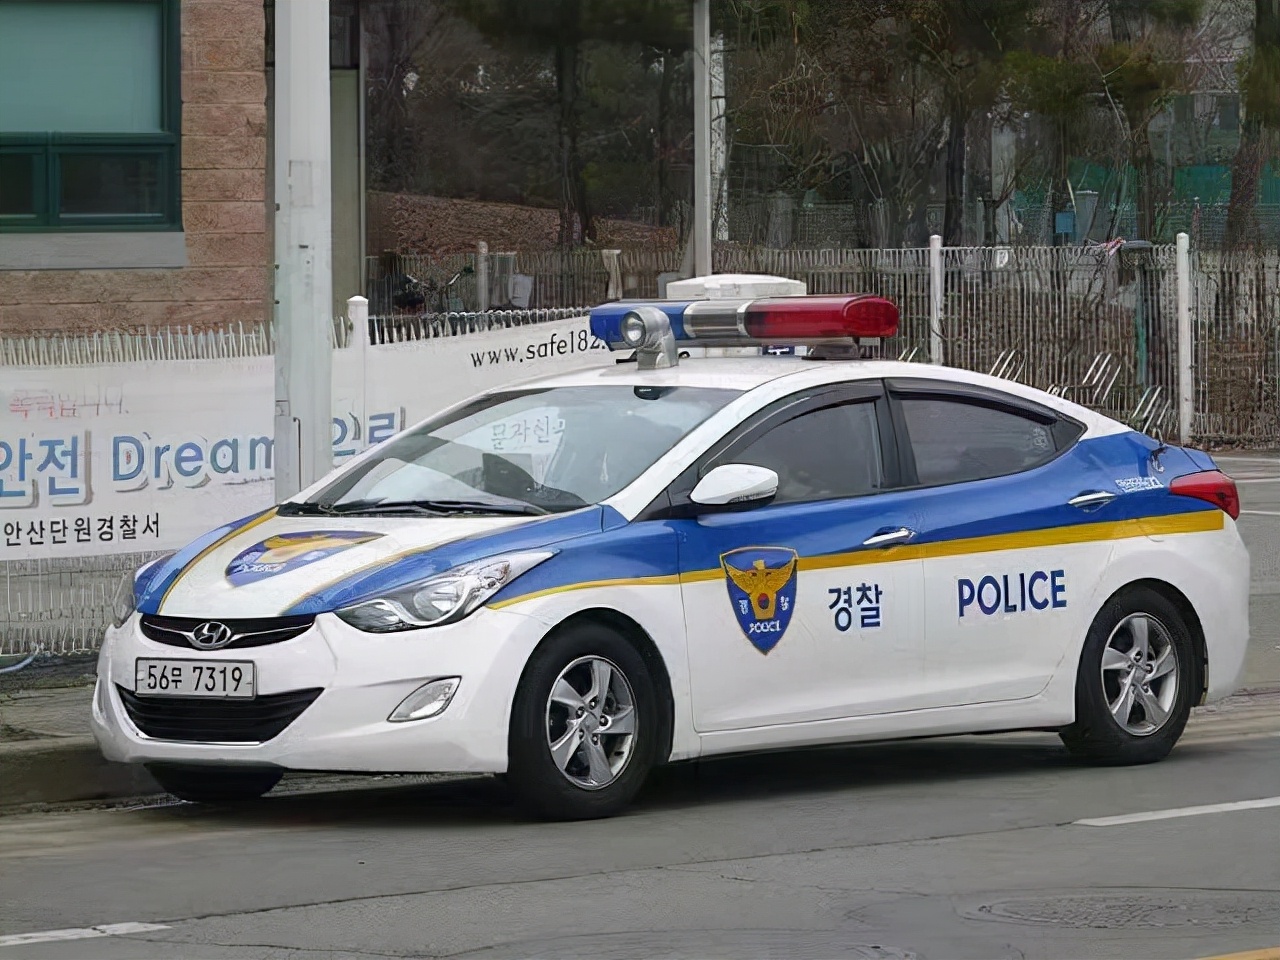 现代汽车早已经火遍全球,作为韩国的本土品牌自然也是警车的不二选择